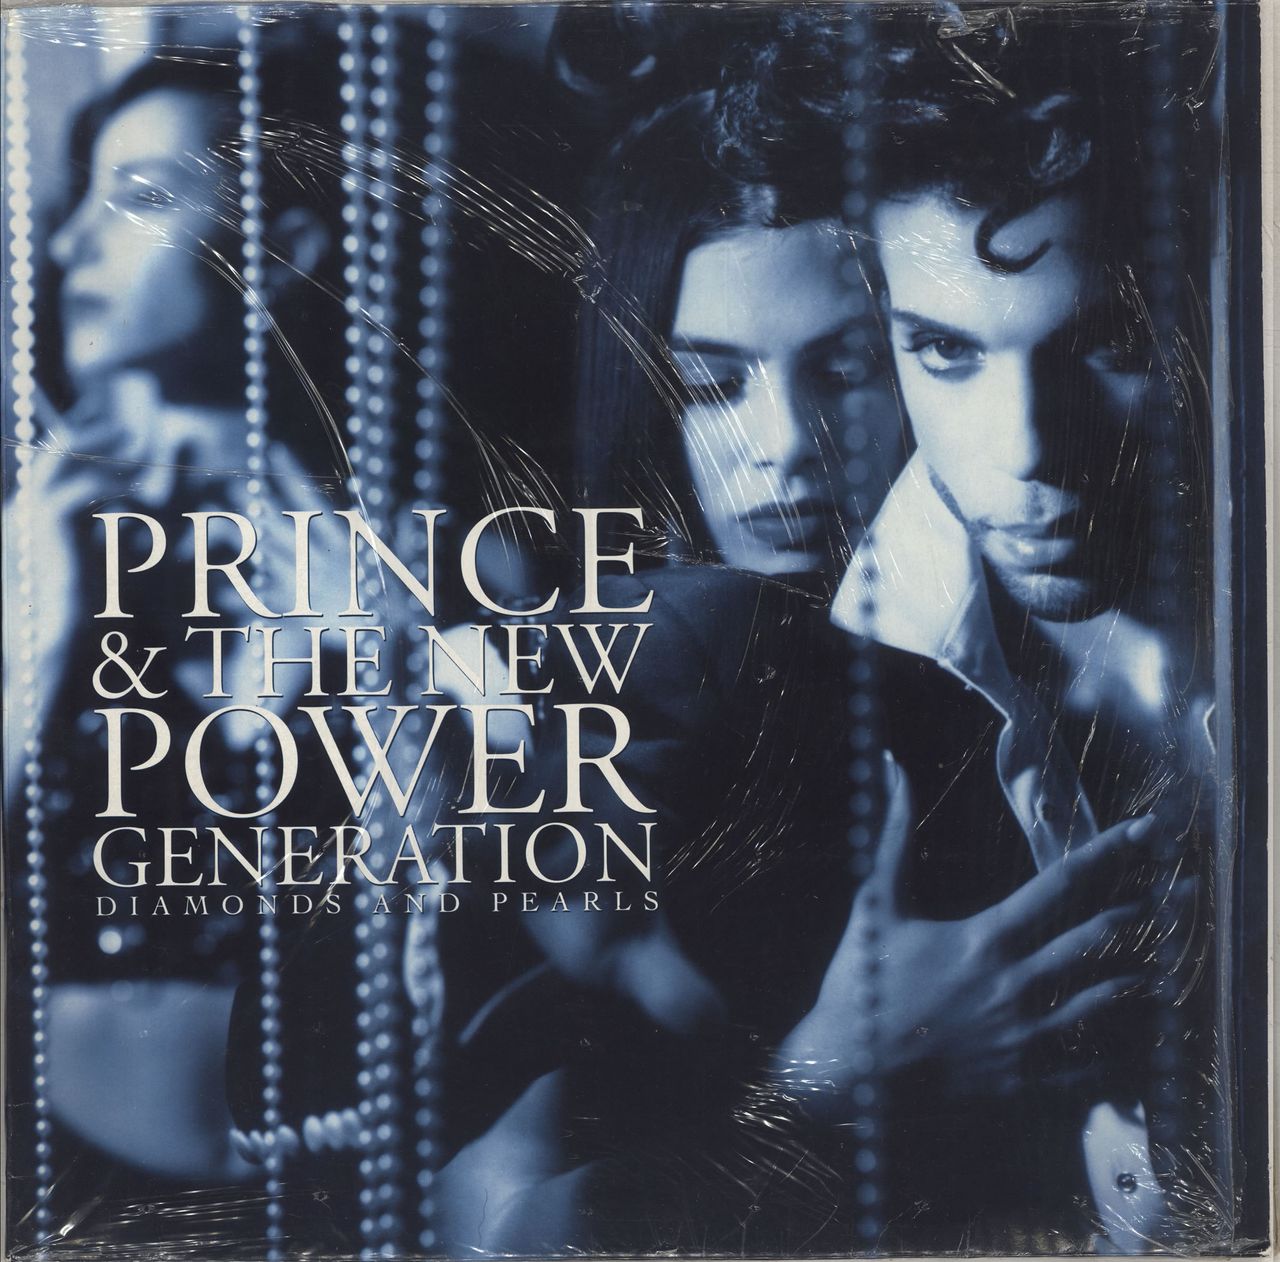 Prince Diamonds And Pearls - EX UK 2-LP vinyl record set (Double LP Album) WX432